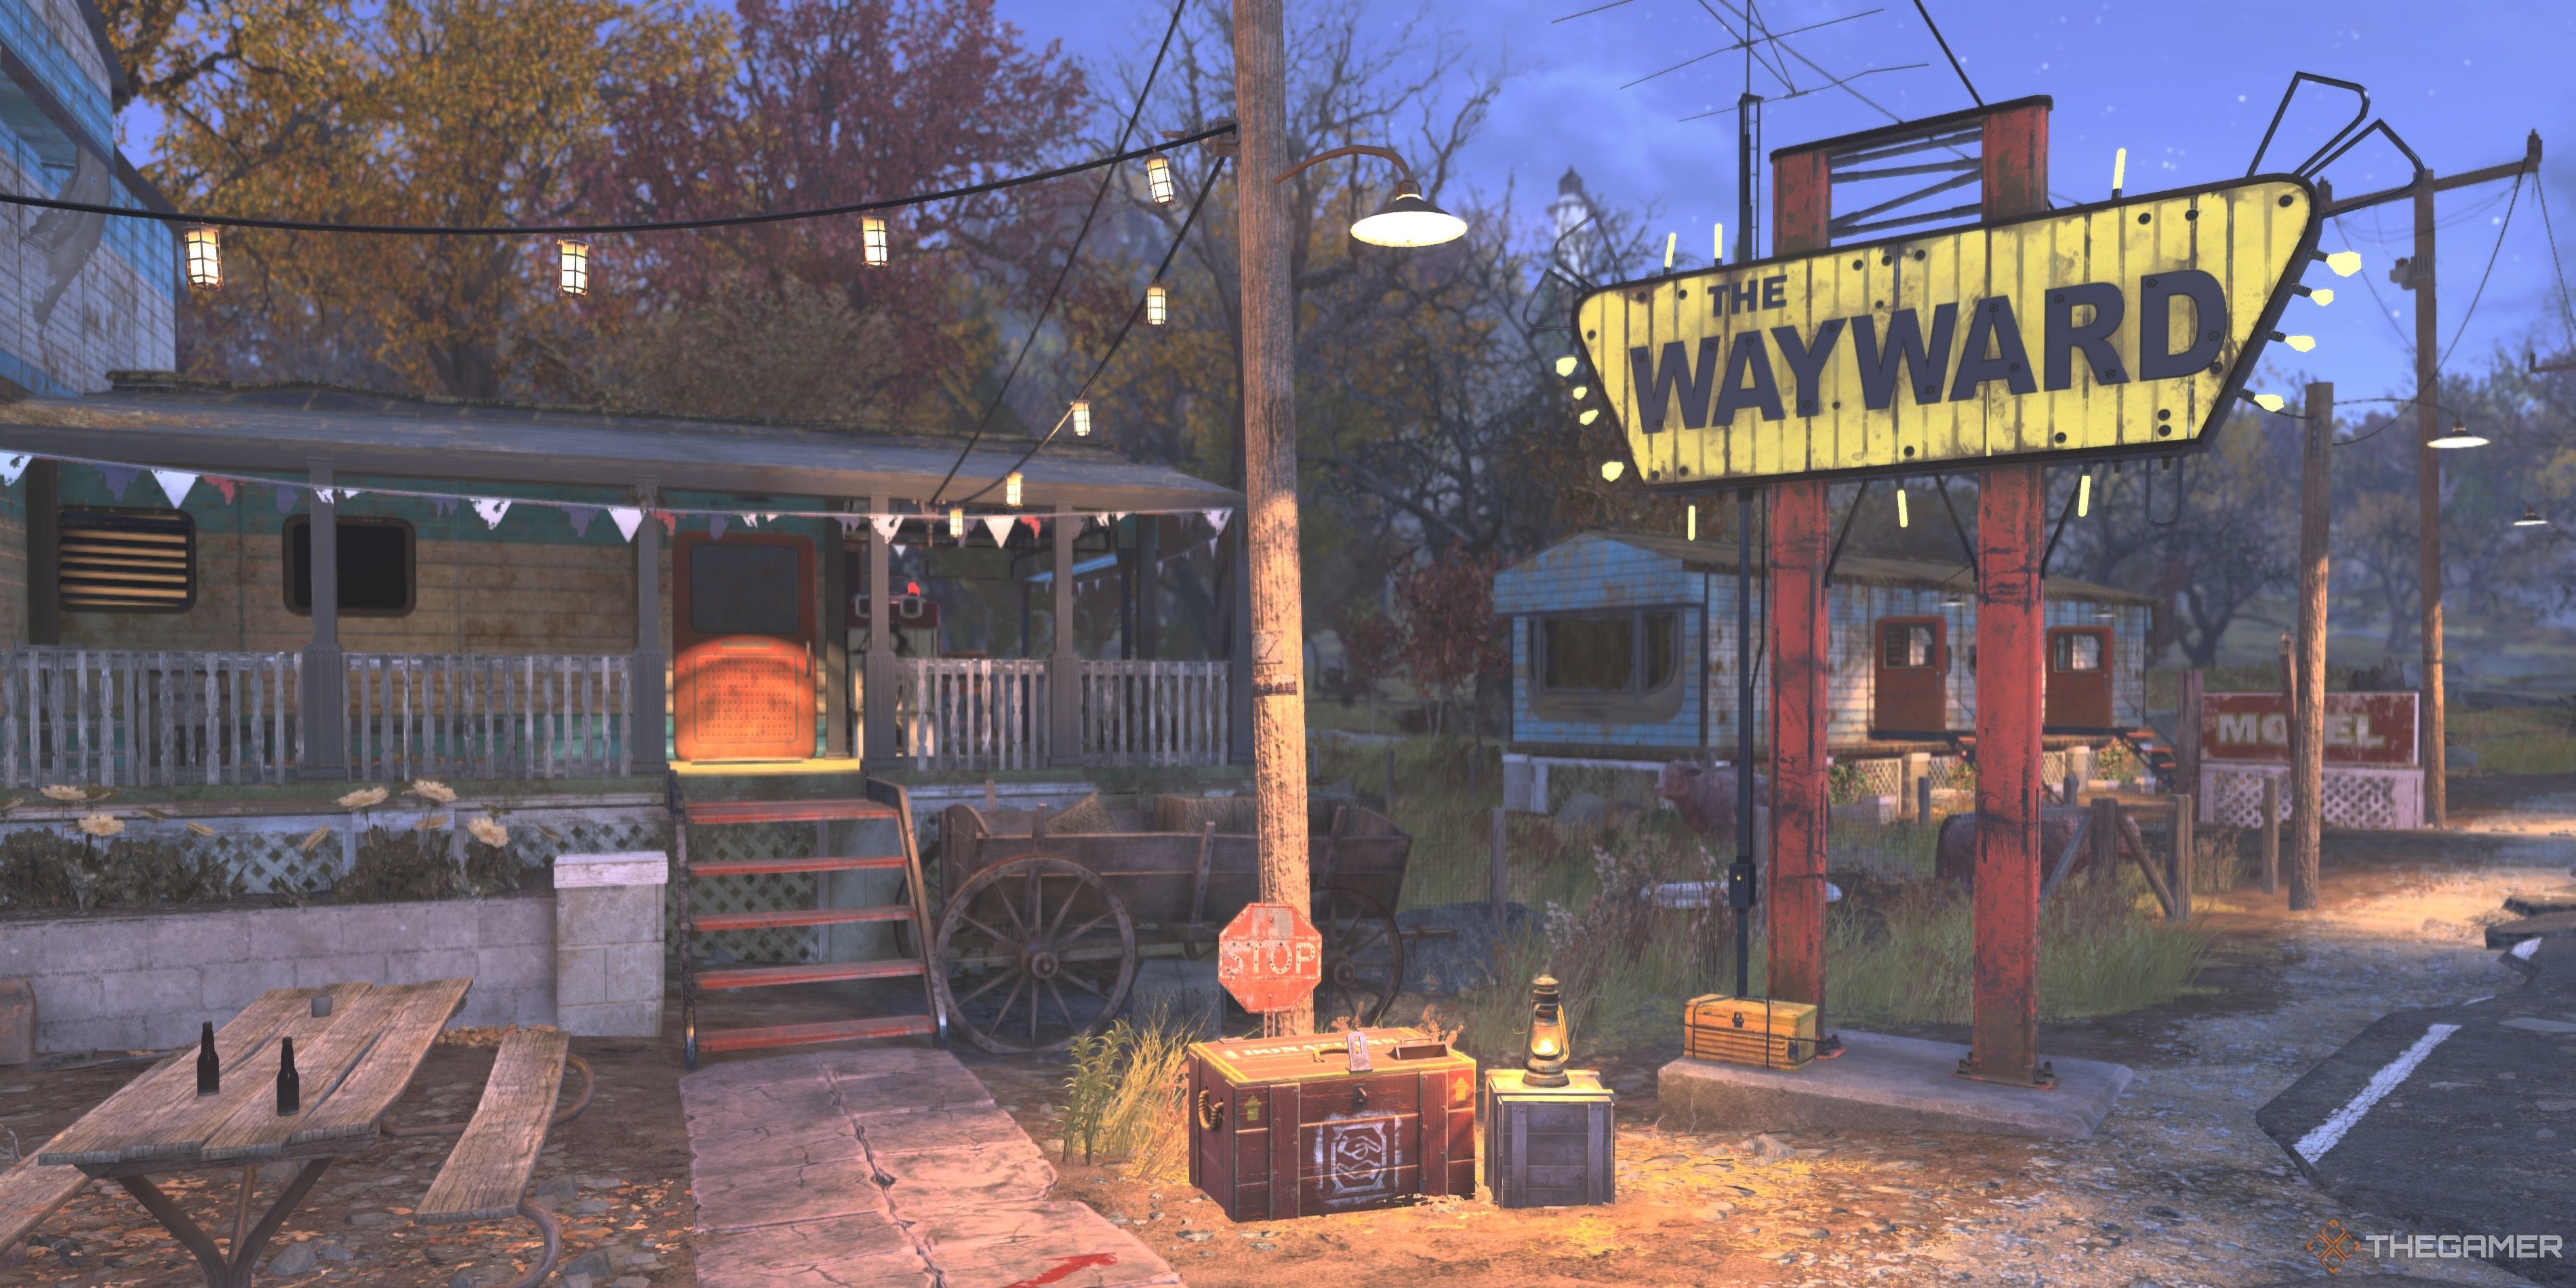 The Wayward exterior at night in Fallout 76.